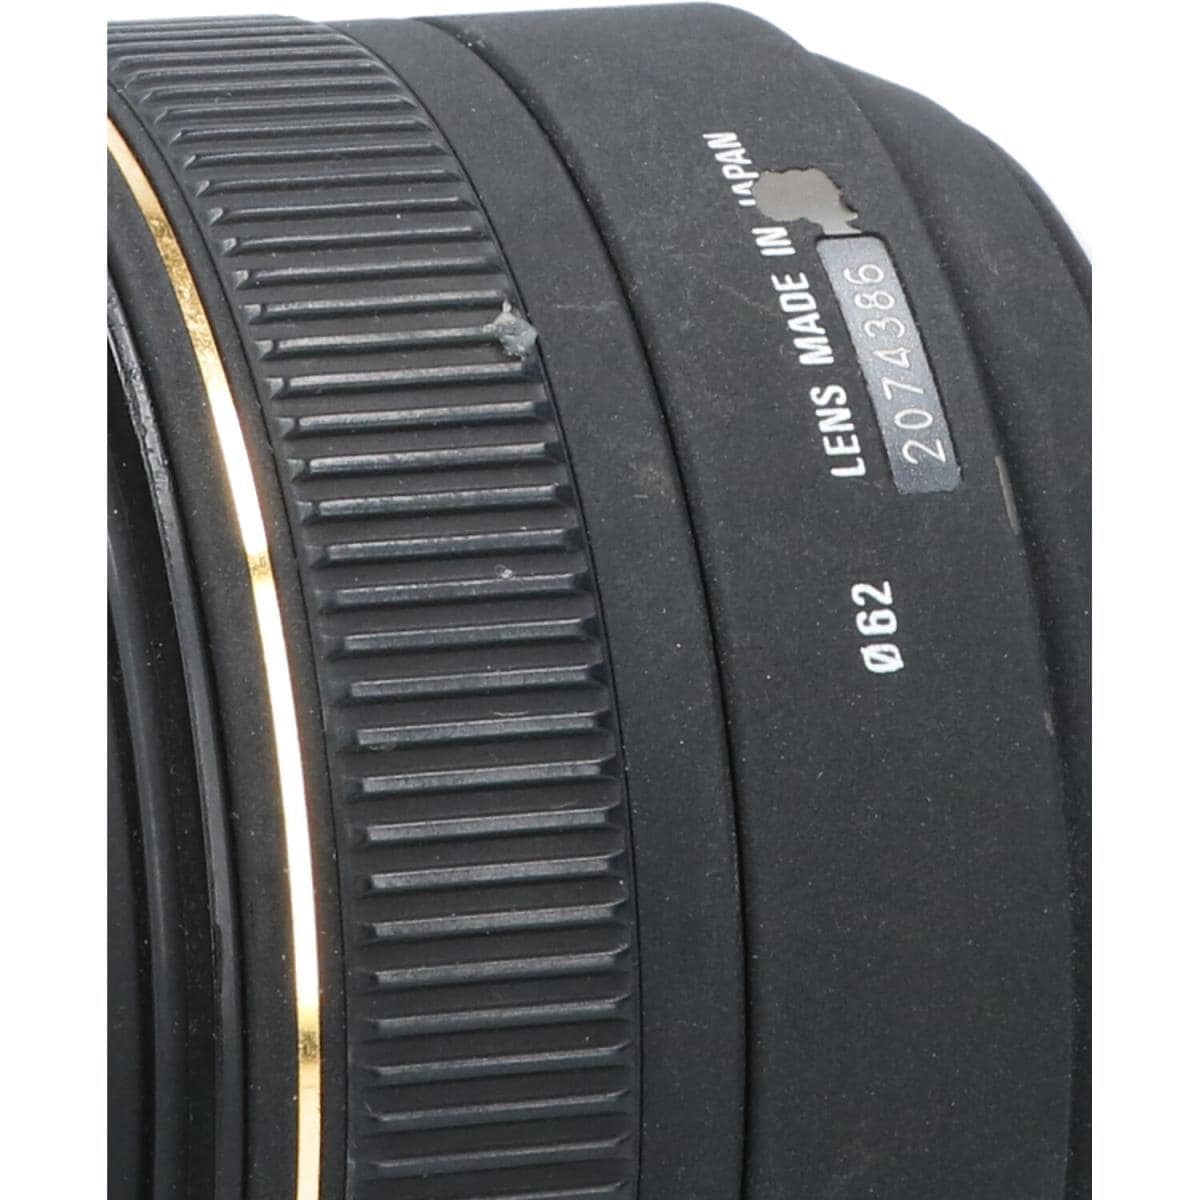 SIGMA Nikon 30mm F1.4EX DC HSM